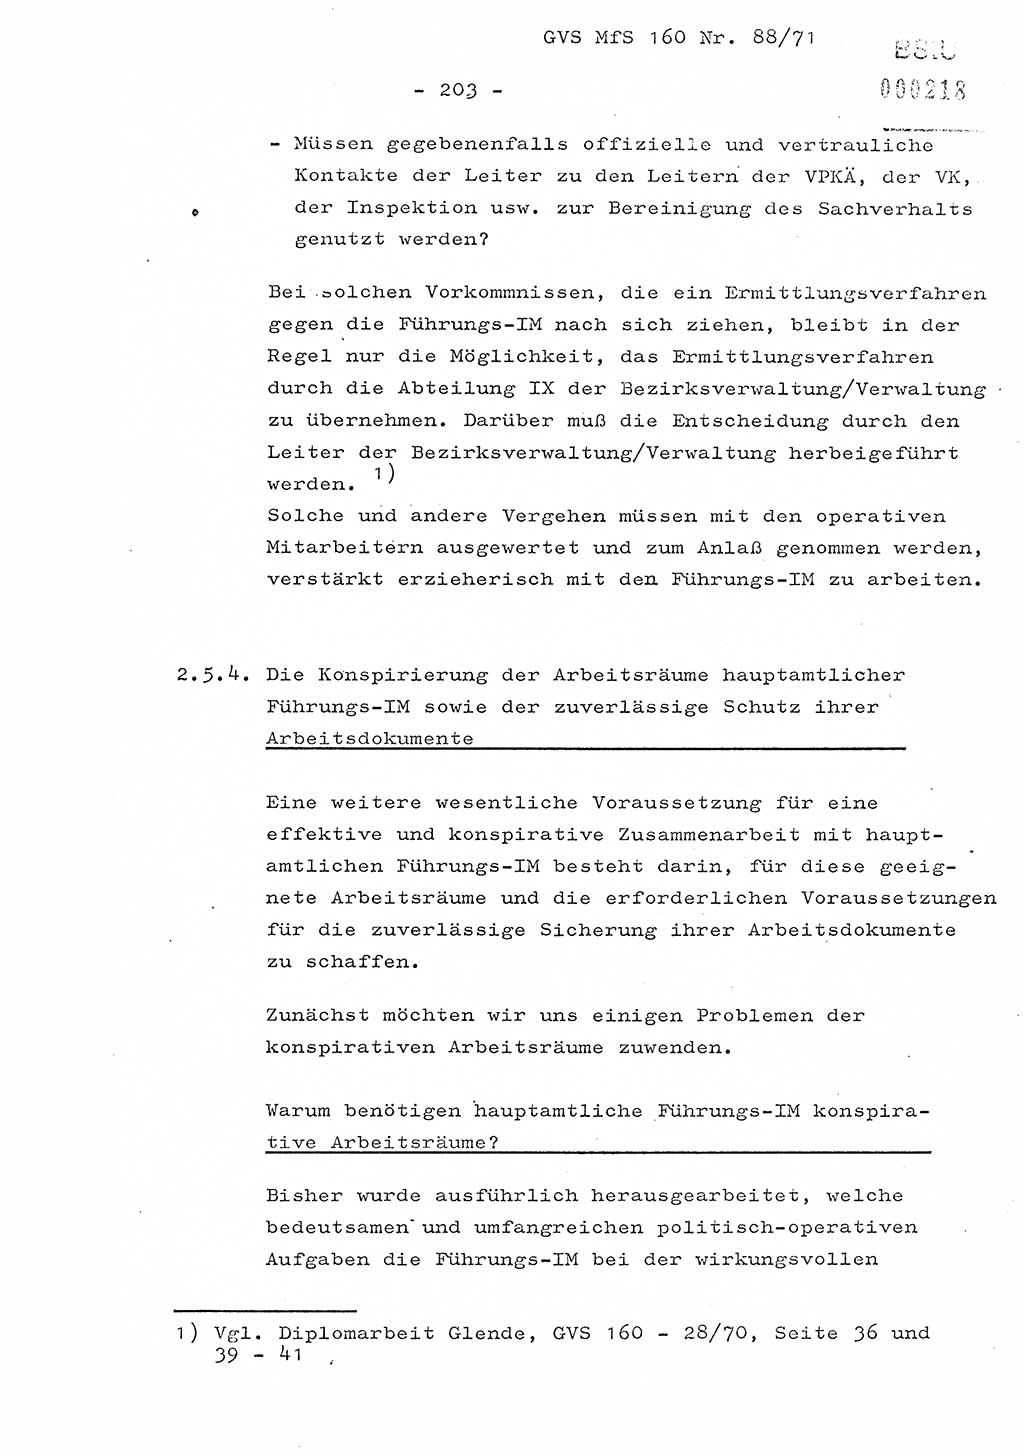 Dissertation Oberstleutnant Josef Schwarz (BV Schwerin), Major Fritz Amm (JHS), Hauptmann Peter Gräßler (JHS), Ministerium für Staatssicherheit (MfS) [Deutsche Demokratische Republik (DDR)], Juristische Hochschule (JHS), Geheime Verschlußsache (GVS) 160-88/71, Potsdam 1972, Seite 203 (Diss. MfS DDR JHS GVS 160-88/71 1972, S. 203)